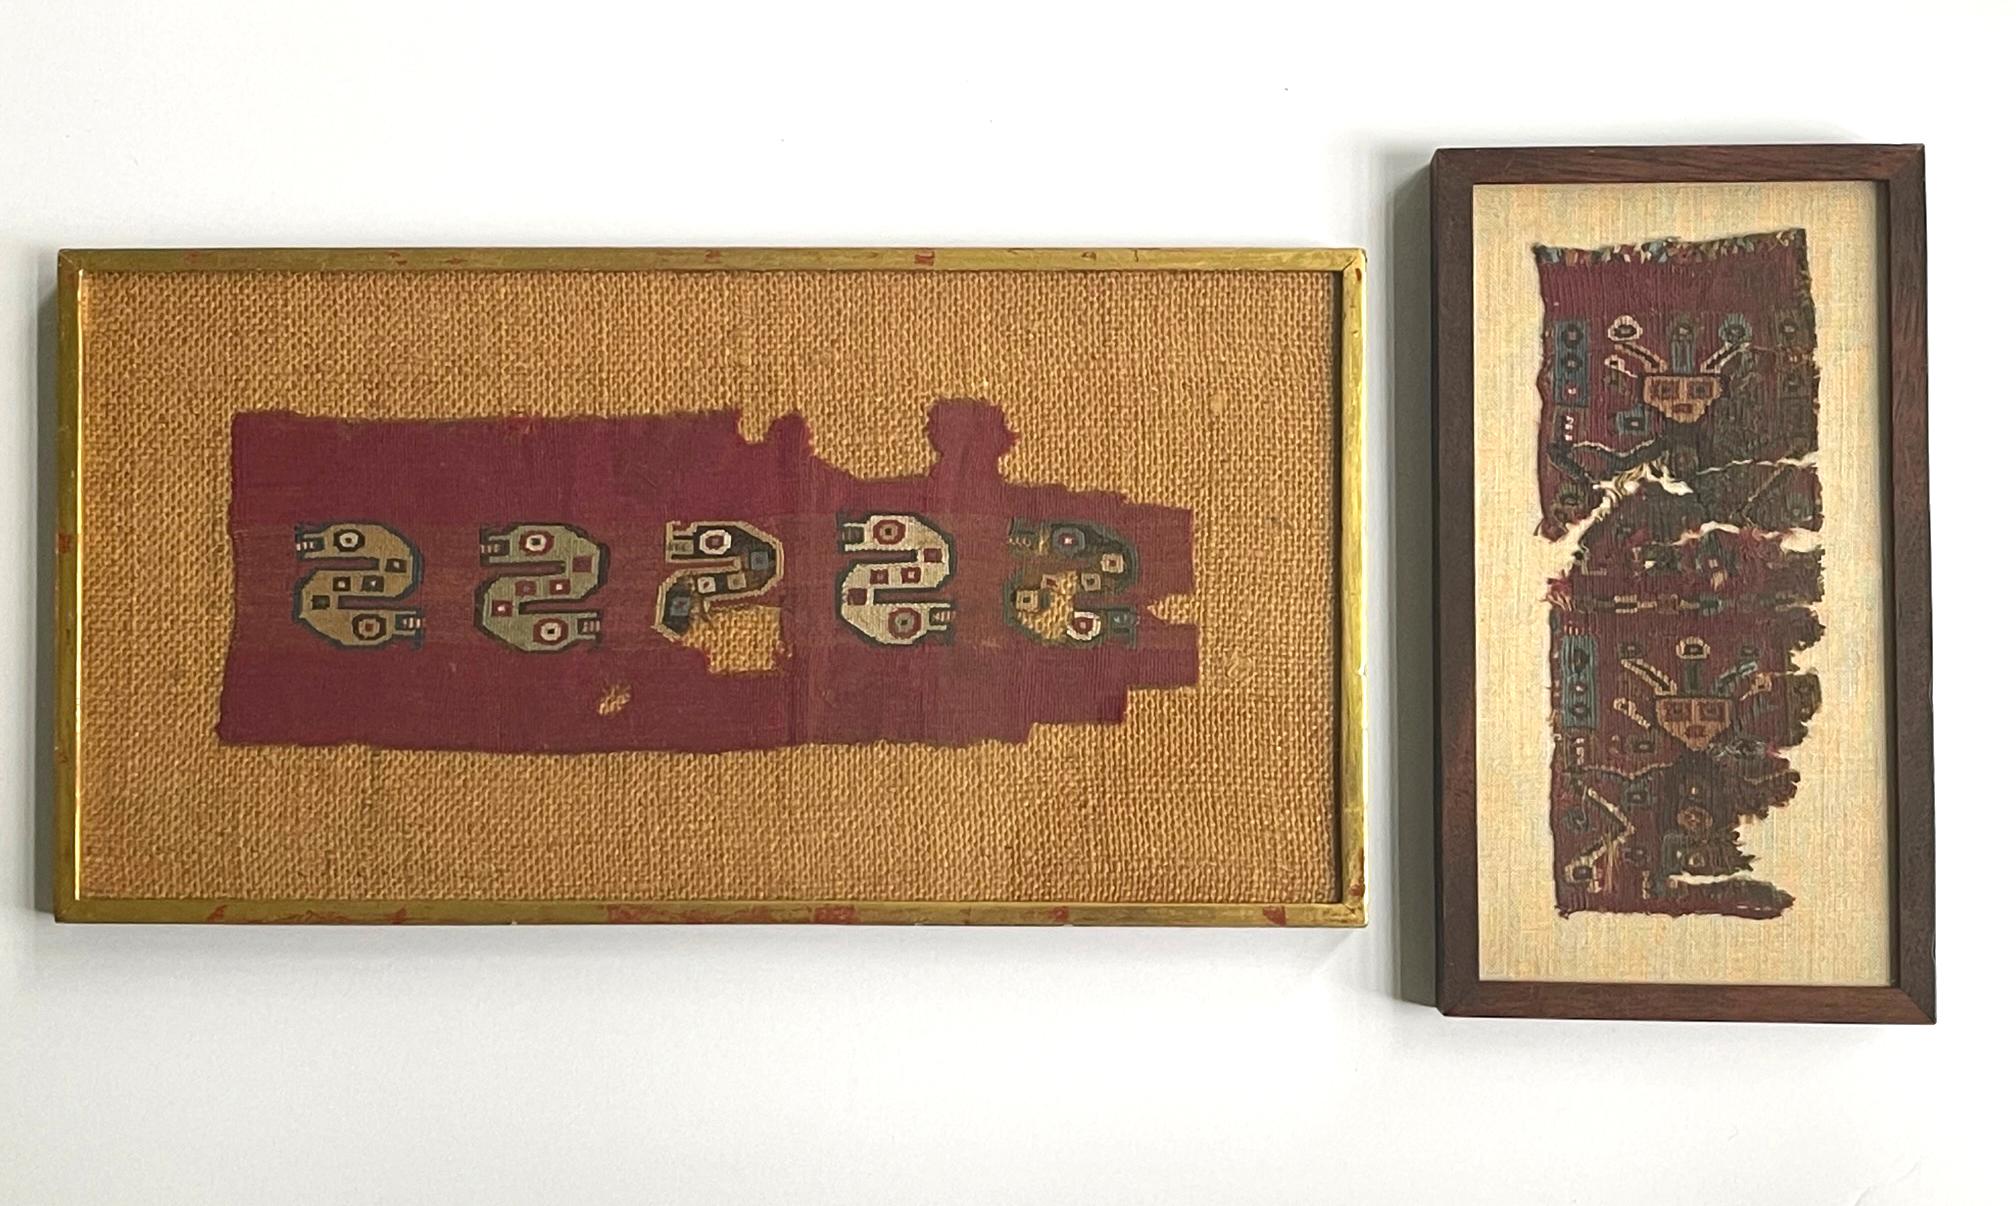 Deux fragments de textiles précolombiens encadrés provenant de la culture Chancay (1000AD-1470AD) dans l'actuel Pérou. Les deux panneaux ont un fond rouge similaire et sont probablement tissés à partir de fibres de camélidés. L'un d'eux présente